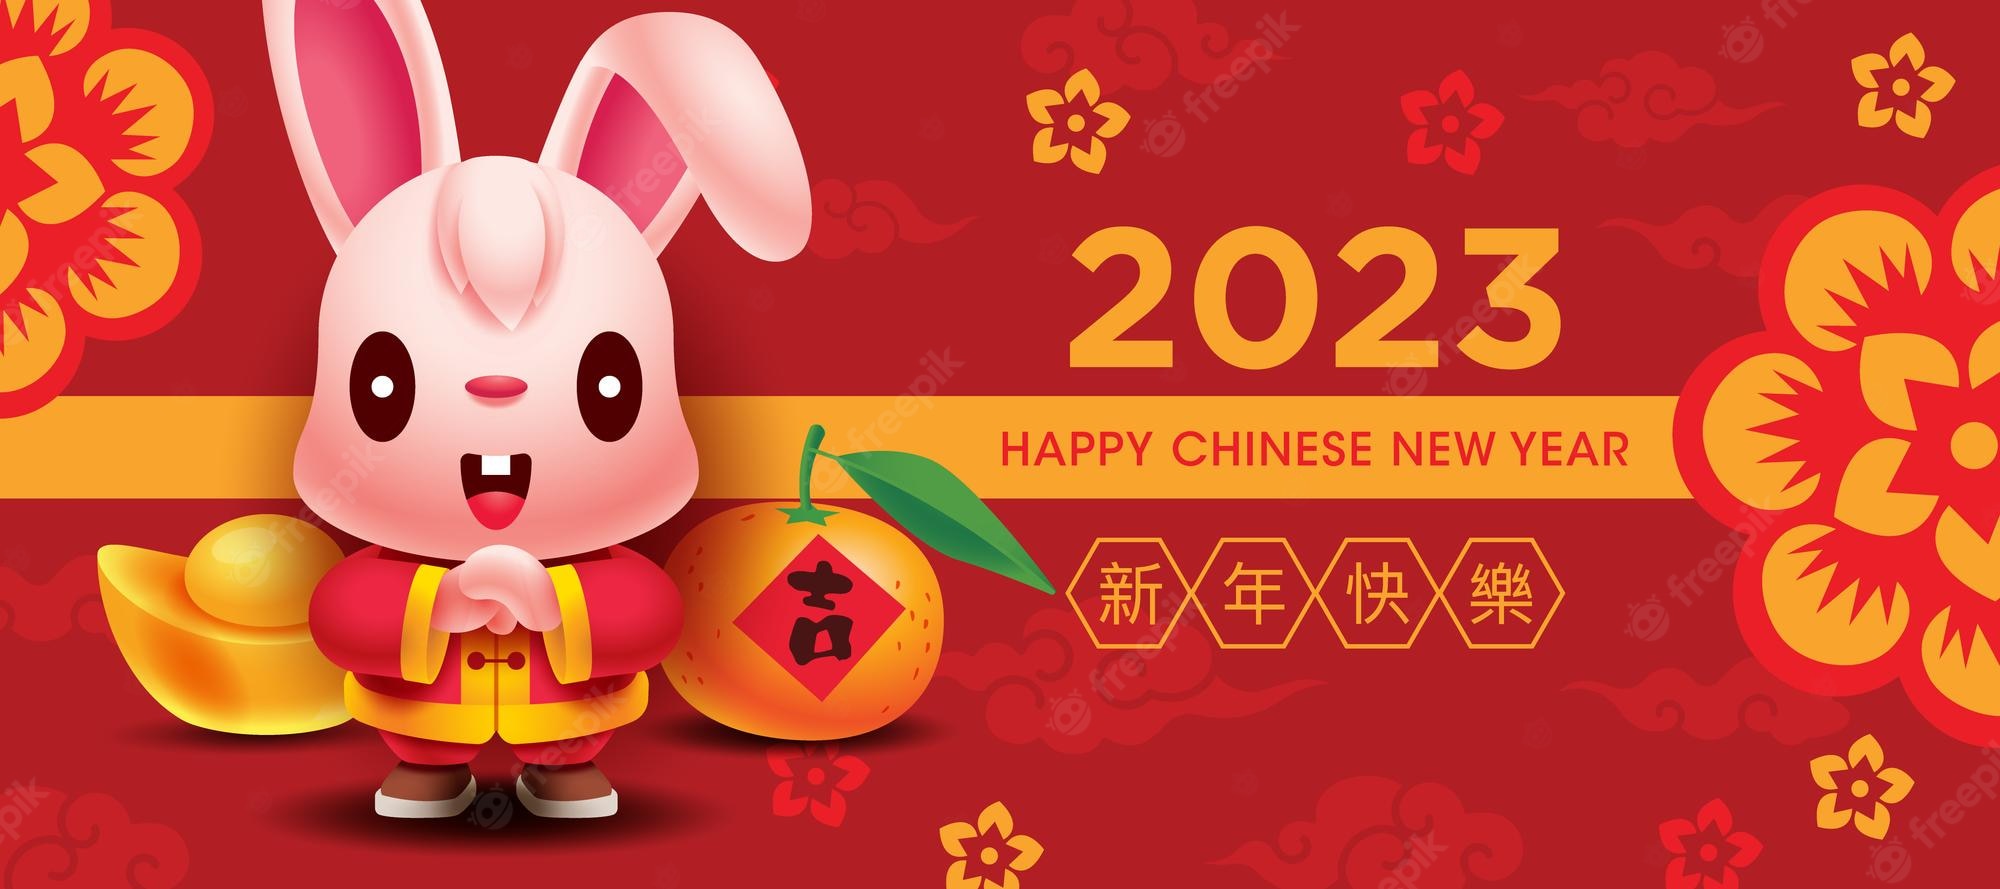 2023-chinees-nieuwjaar-schattige-konijn-groet-banner-met-goud-mandarijn-oranje-rode-achtergrond_438266-587